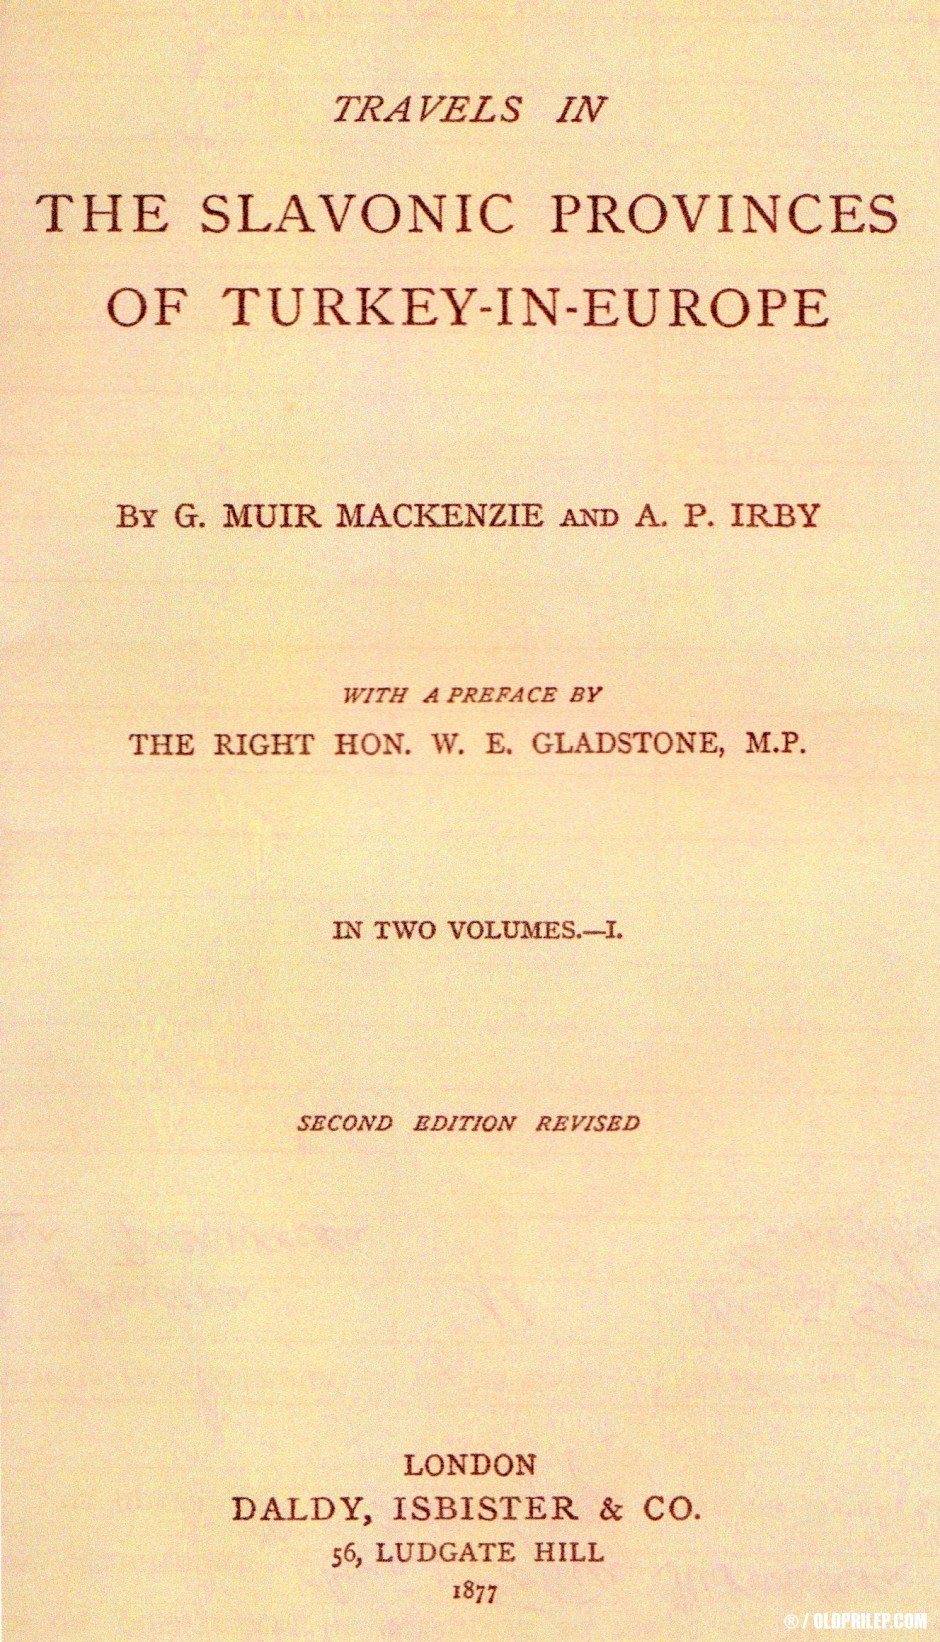 Патописот на Макензи и Ирби од 1863 година